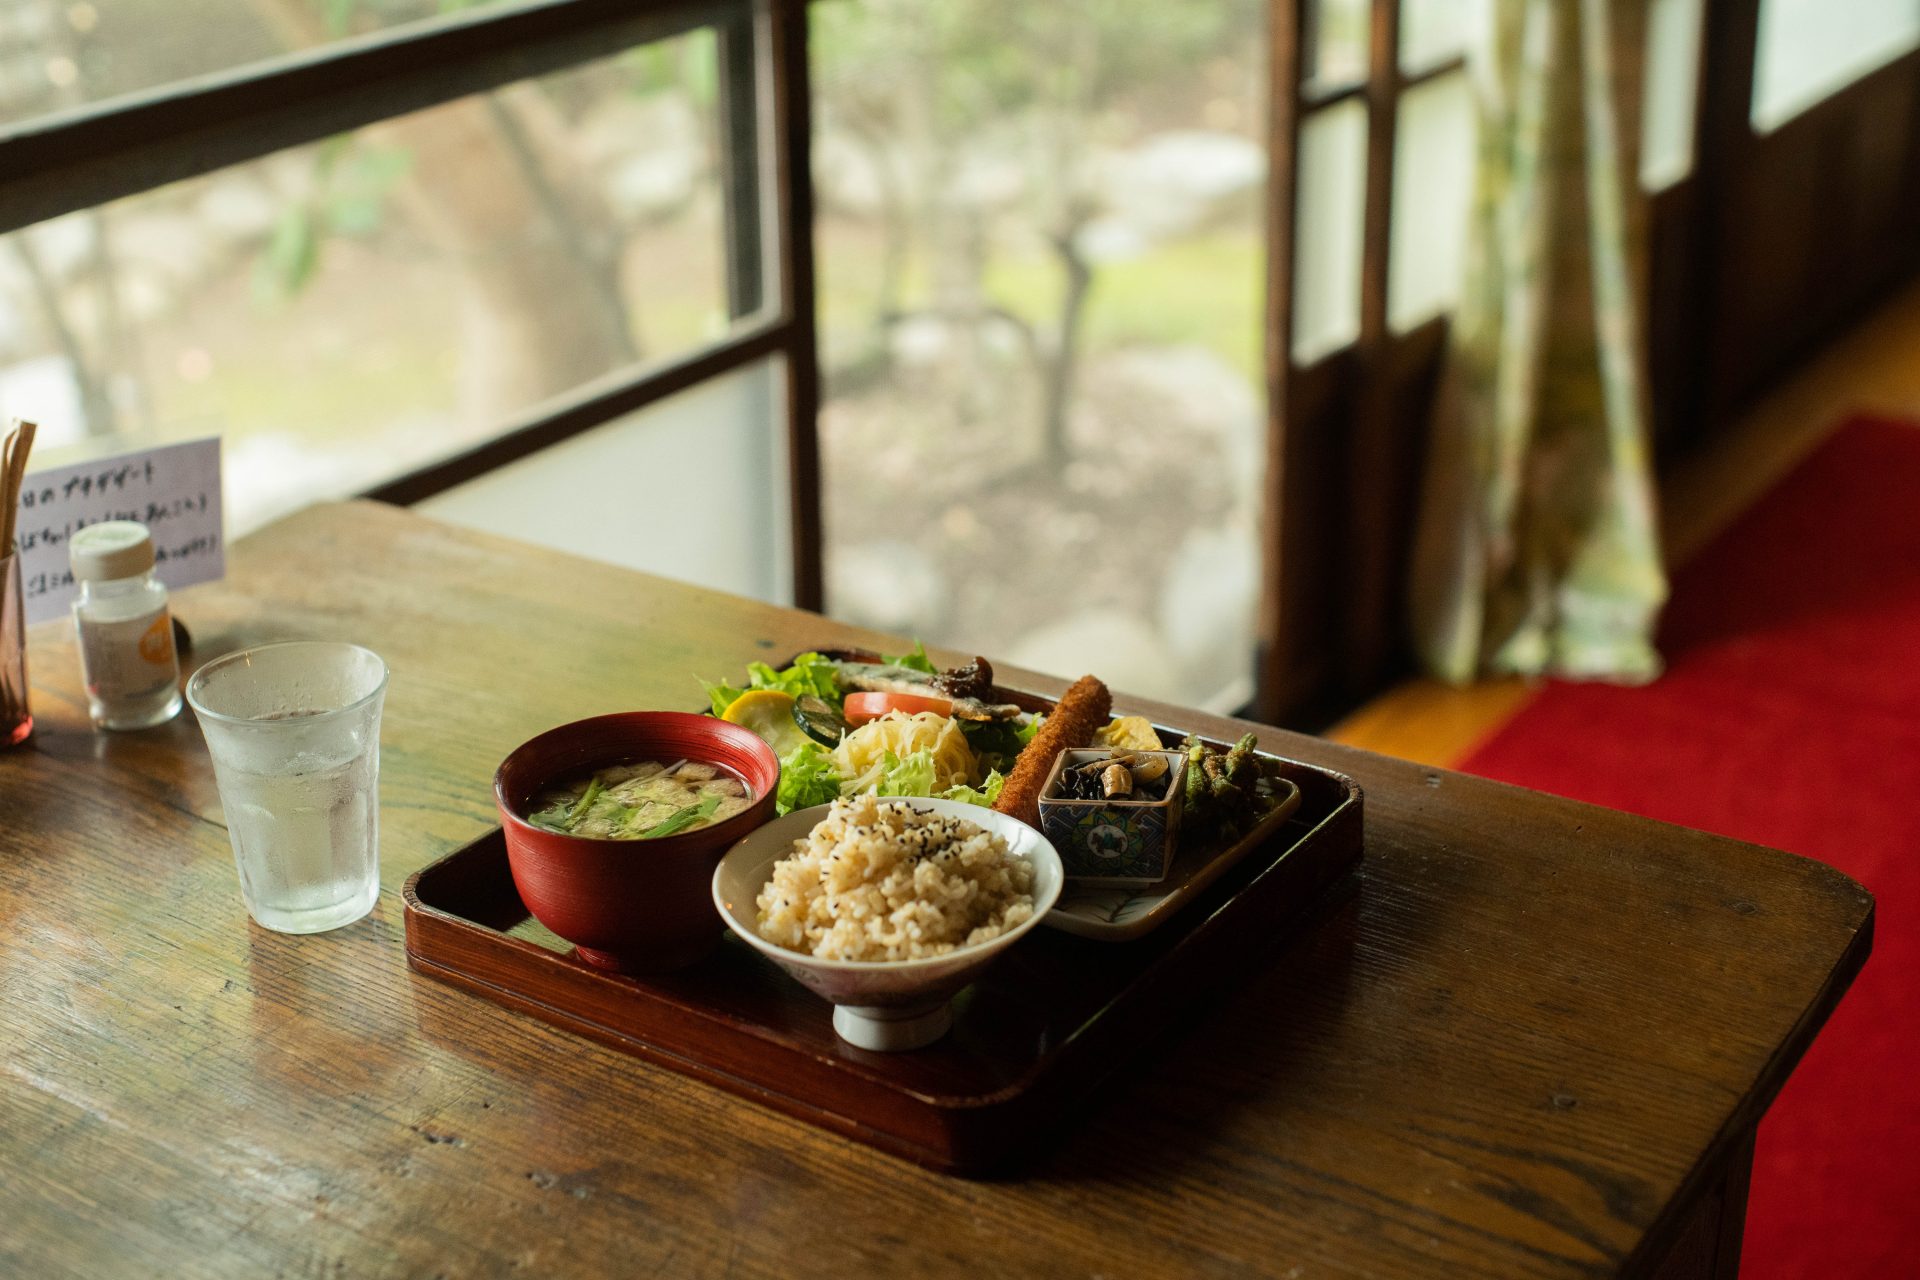 90962昭和の面影残る古民家カフェ「Omoya」で、野菜たっぷりなランチをいただく。